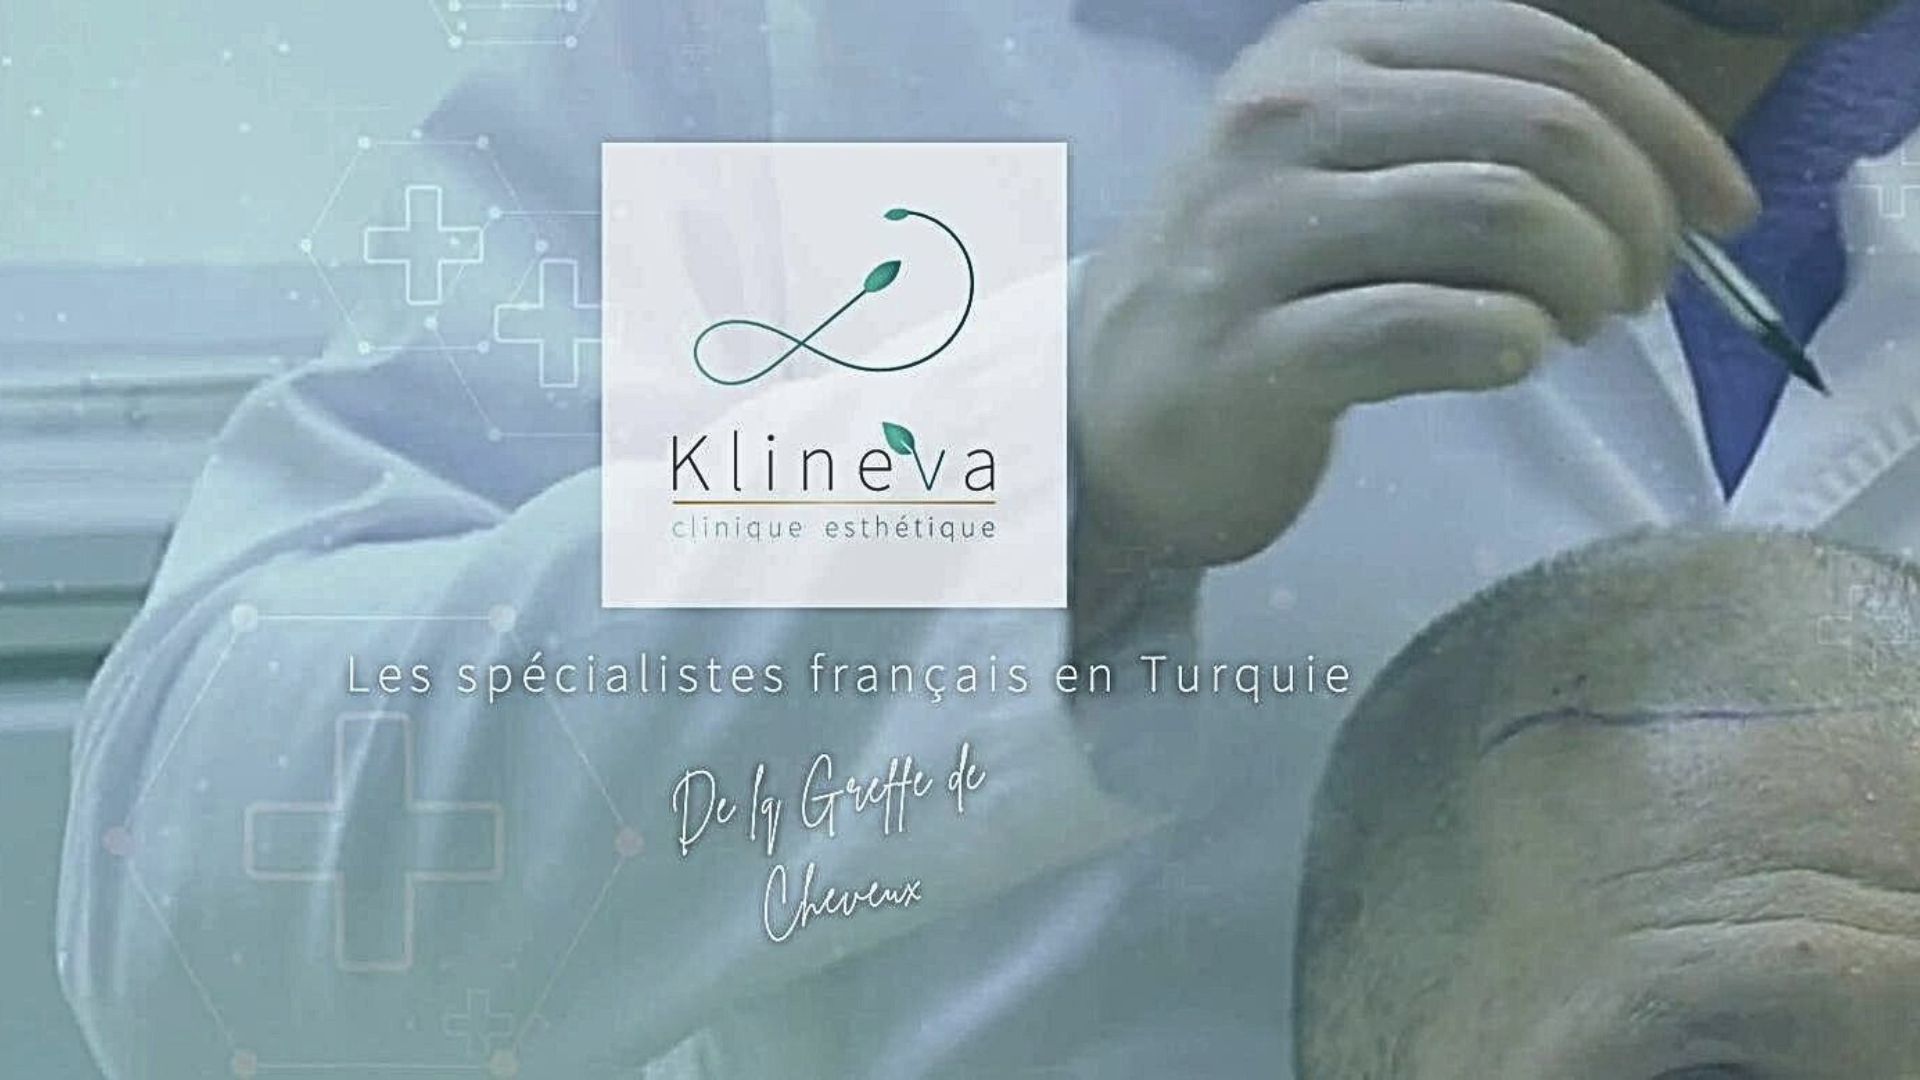 Vivre ailleurs, sur RFI : Klineva, la première clinique esthétique «made in France» en Turquie